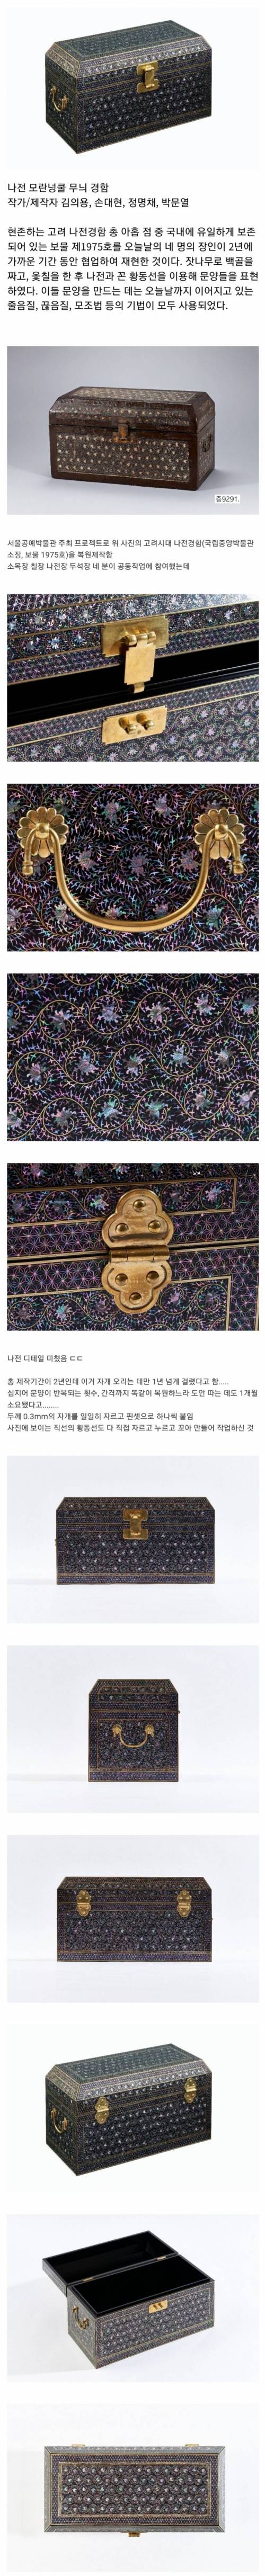 19 한국장인 넷이 2년 걸려 복원제작해낸 고려시대 나전경함 완성품 퀄리티.jpg